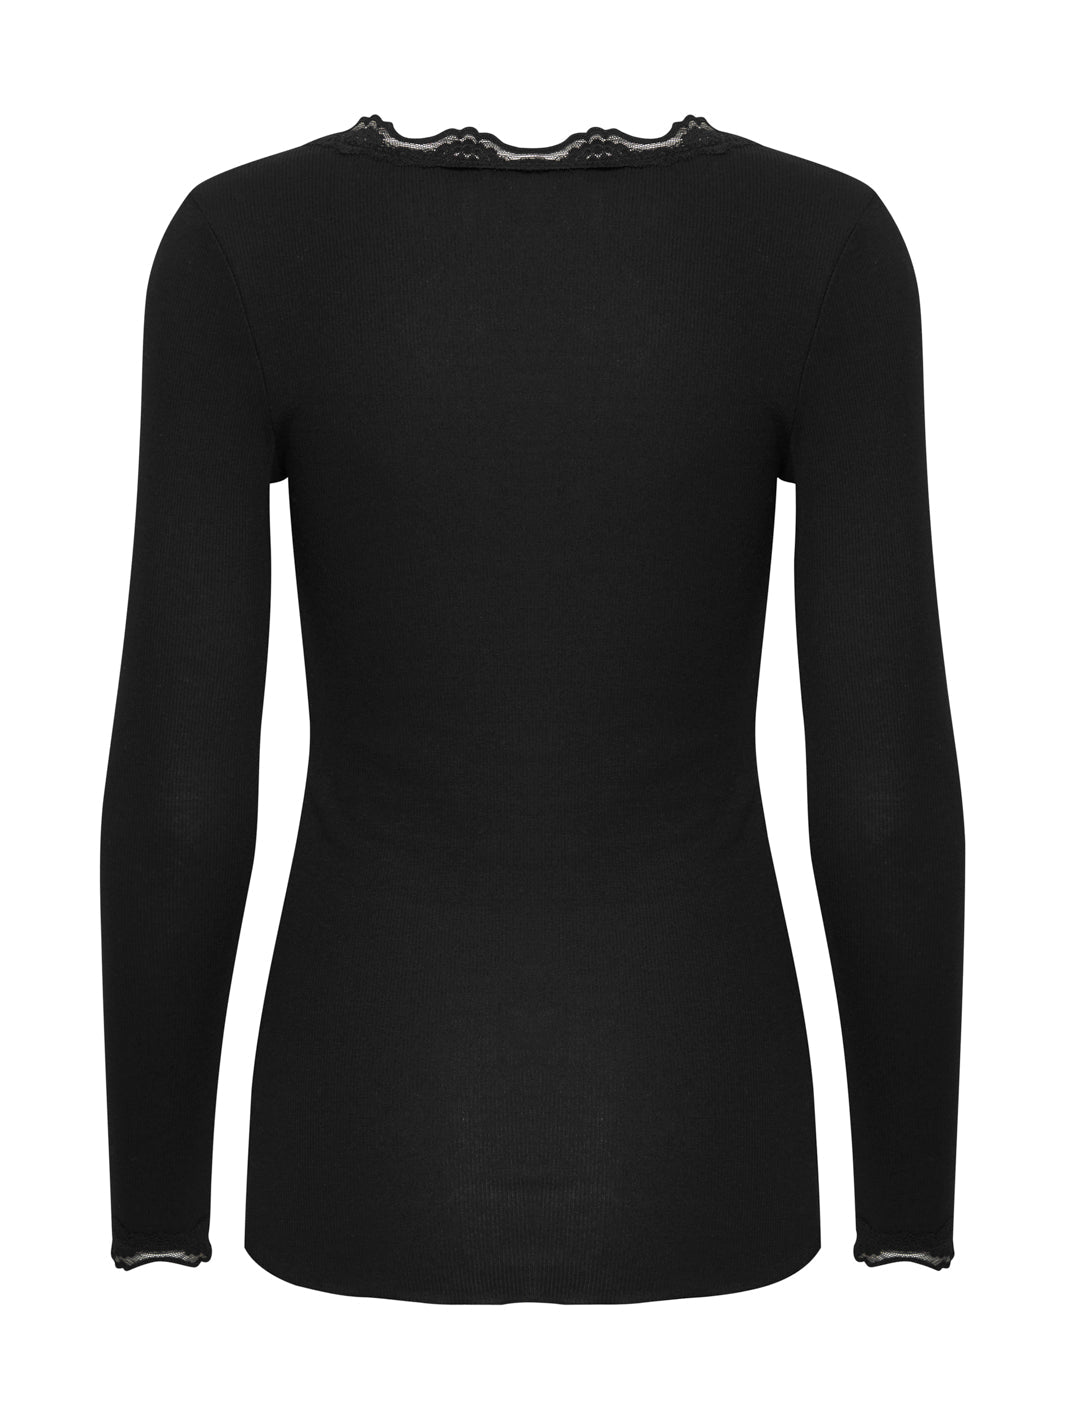 Fransa FRhizamond 2 t-shirt black - Online-Mode